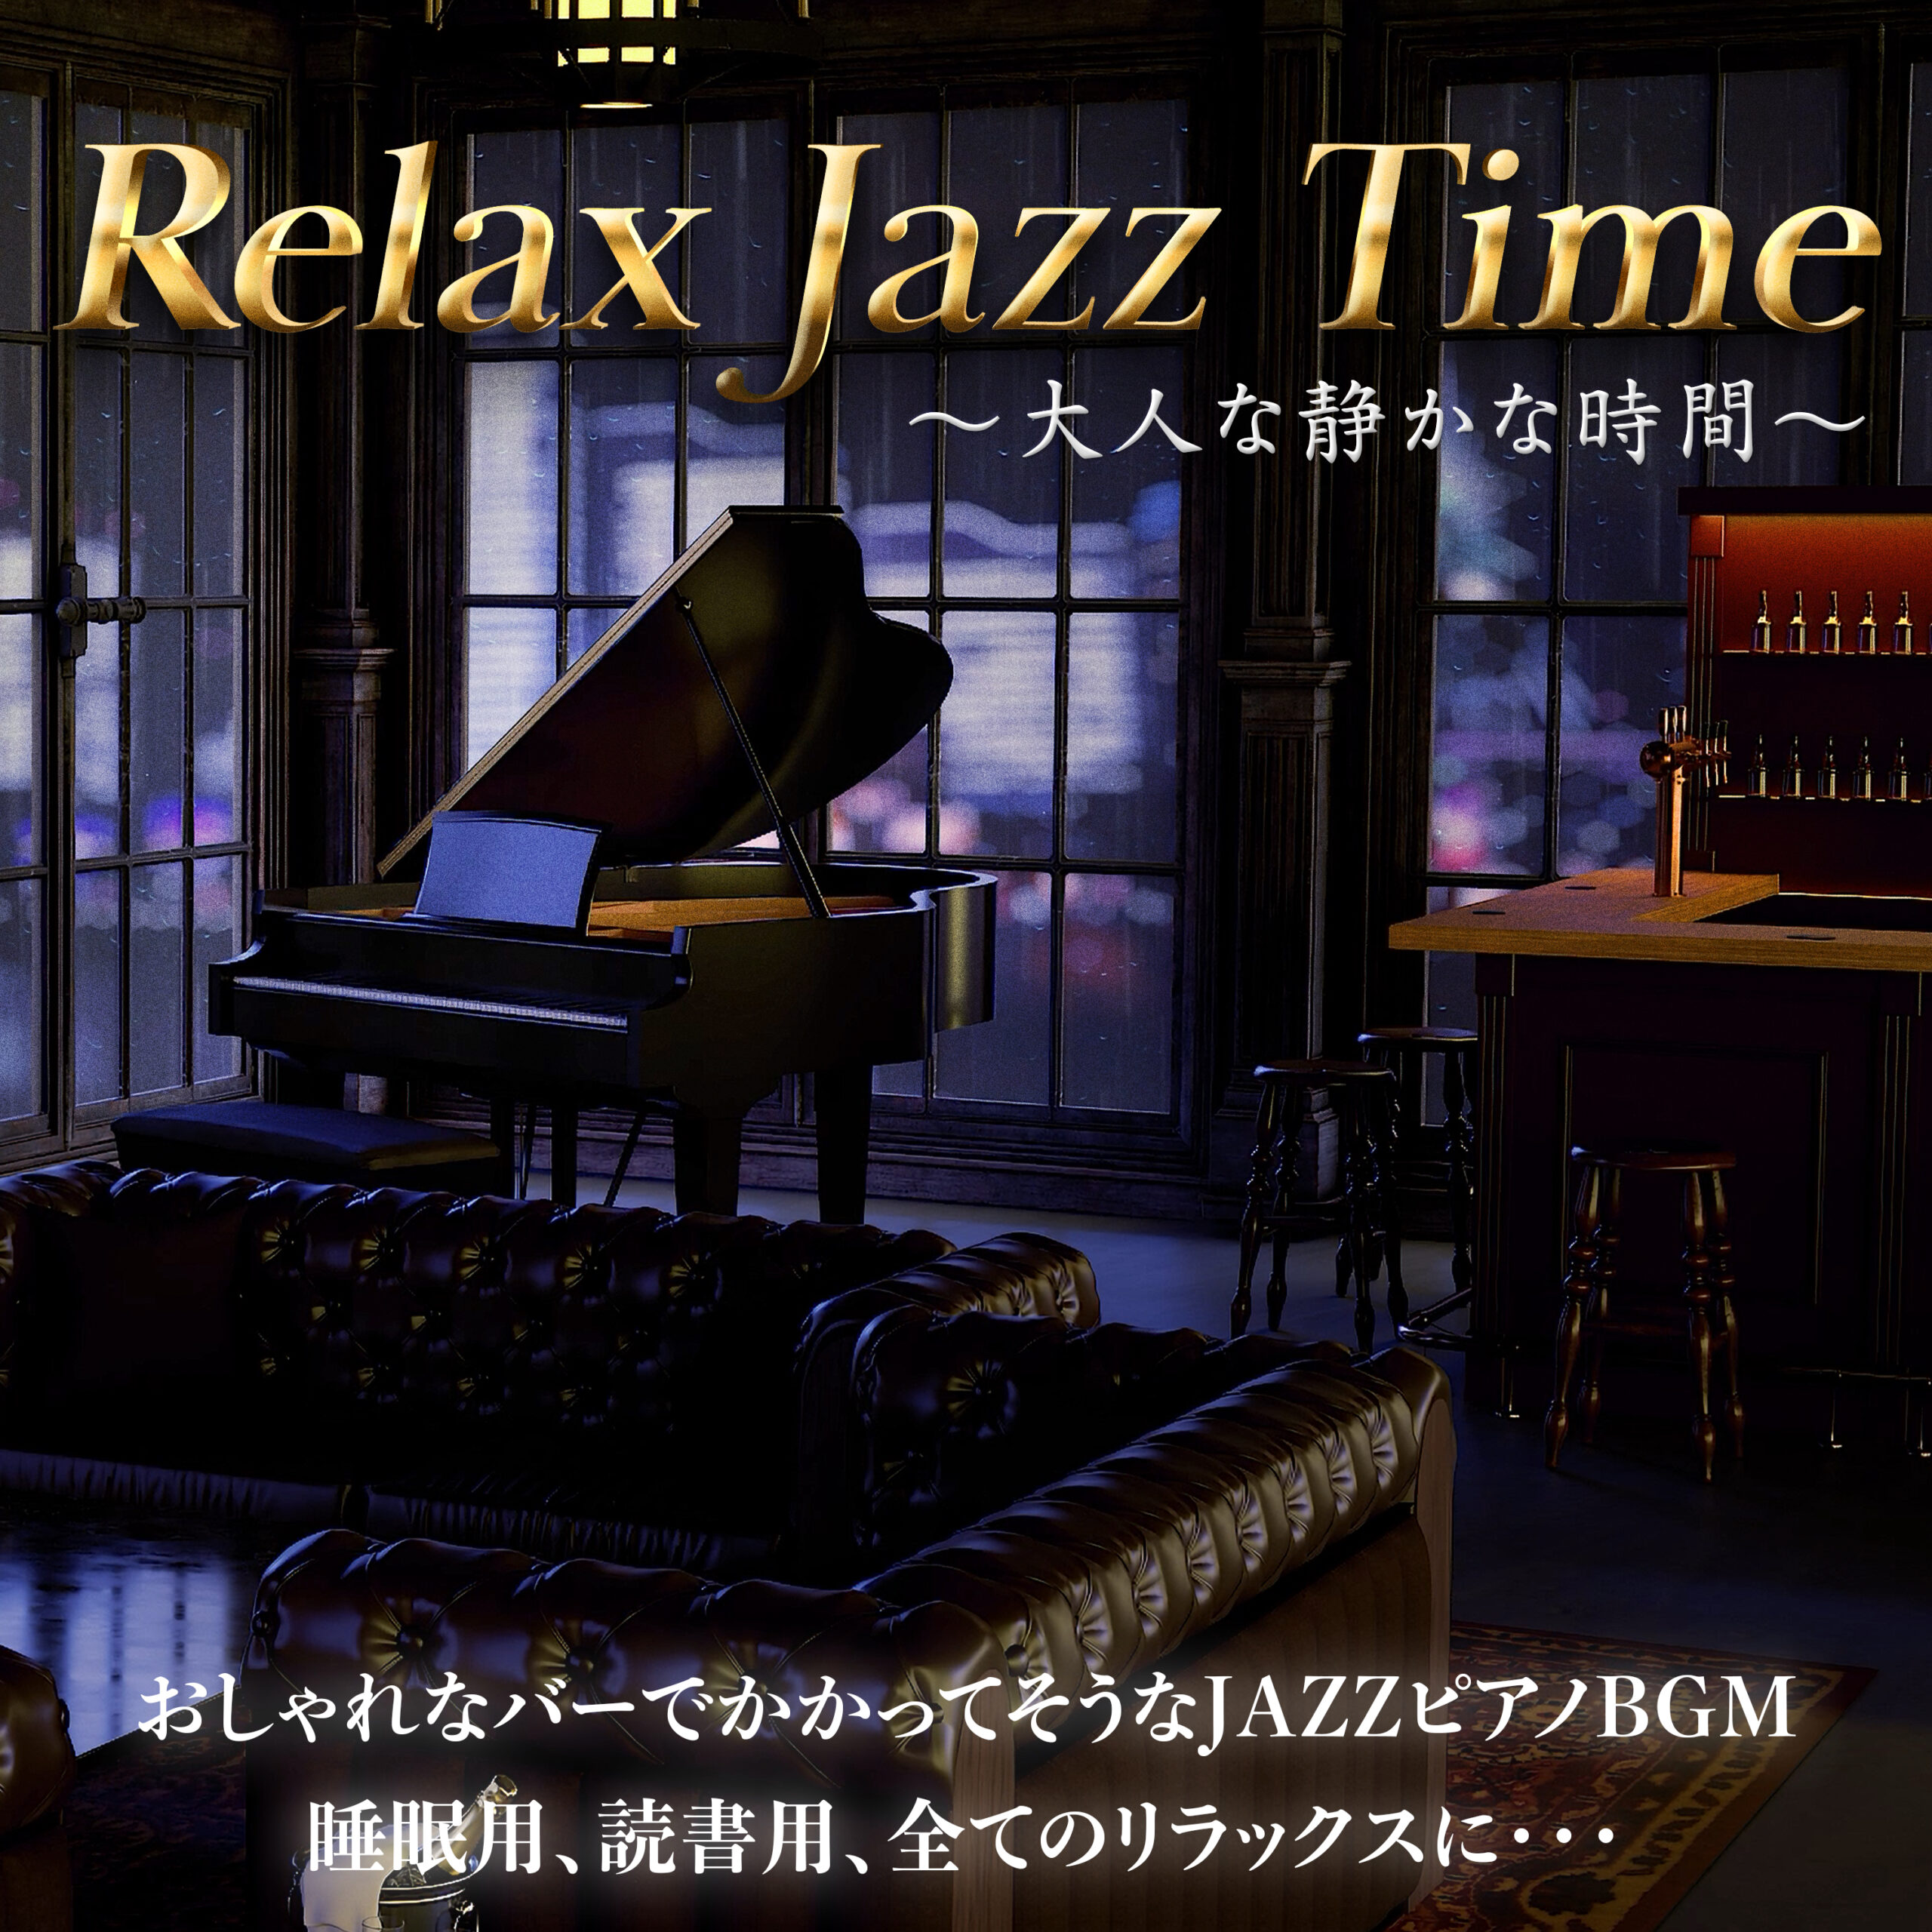 Relax Jazz Time 〜大人な静かな時間〜 おしゃれなバーでかかってそうなJAZZピアノBGM 睡眠用、読書用、全てのリラックスに・・・